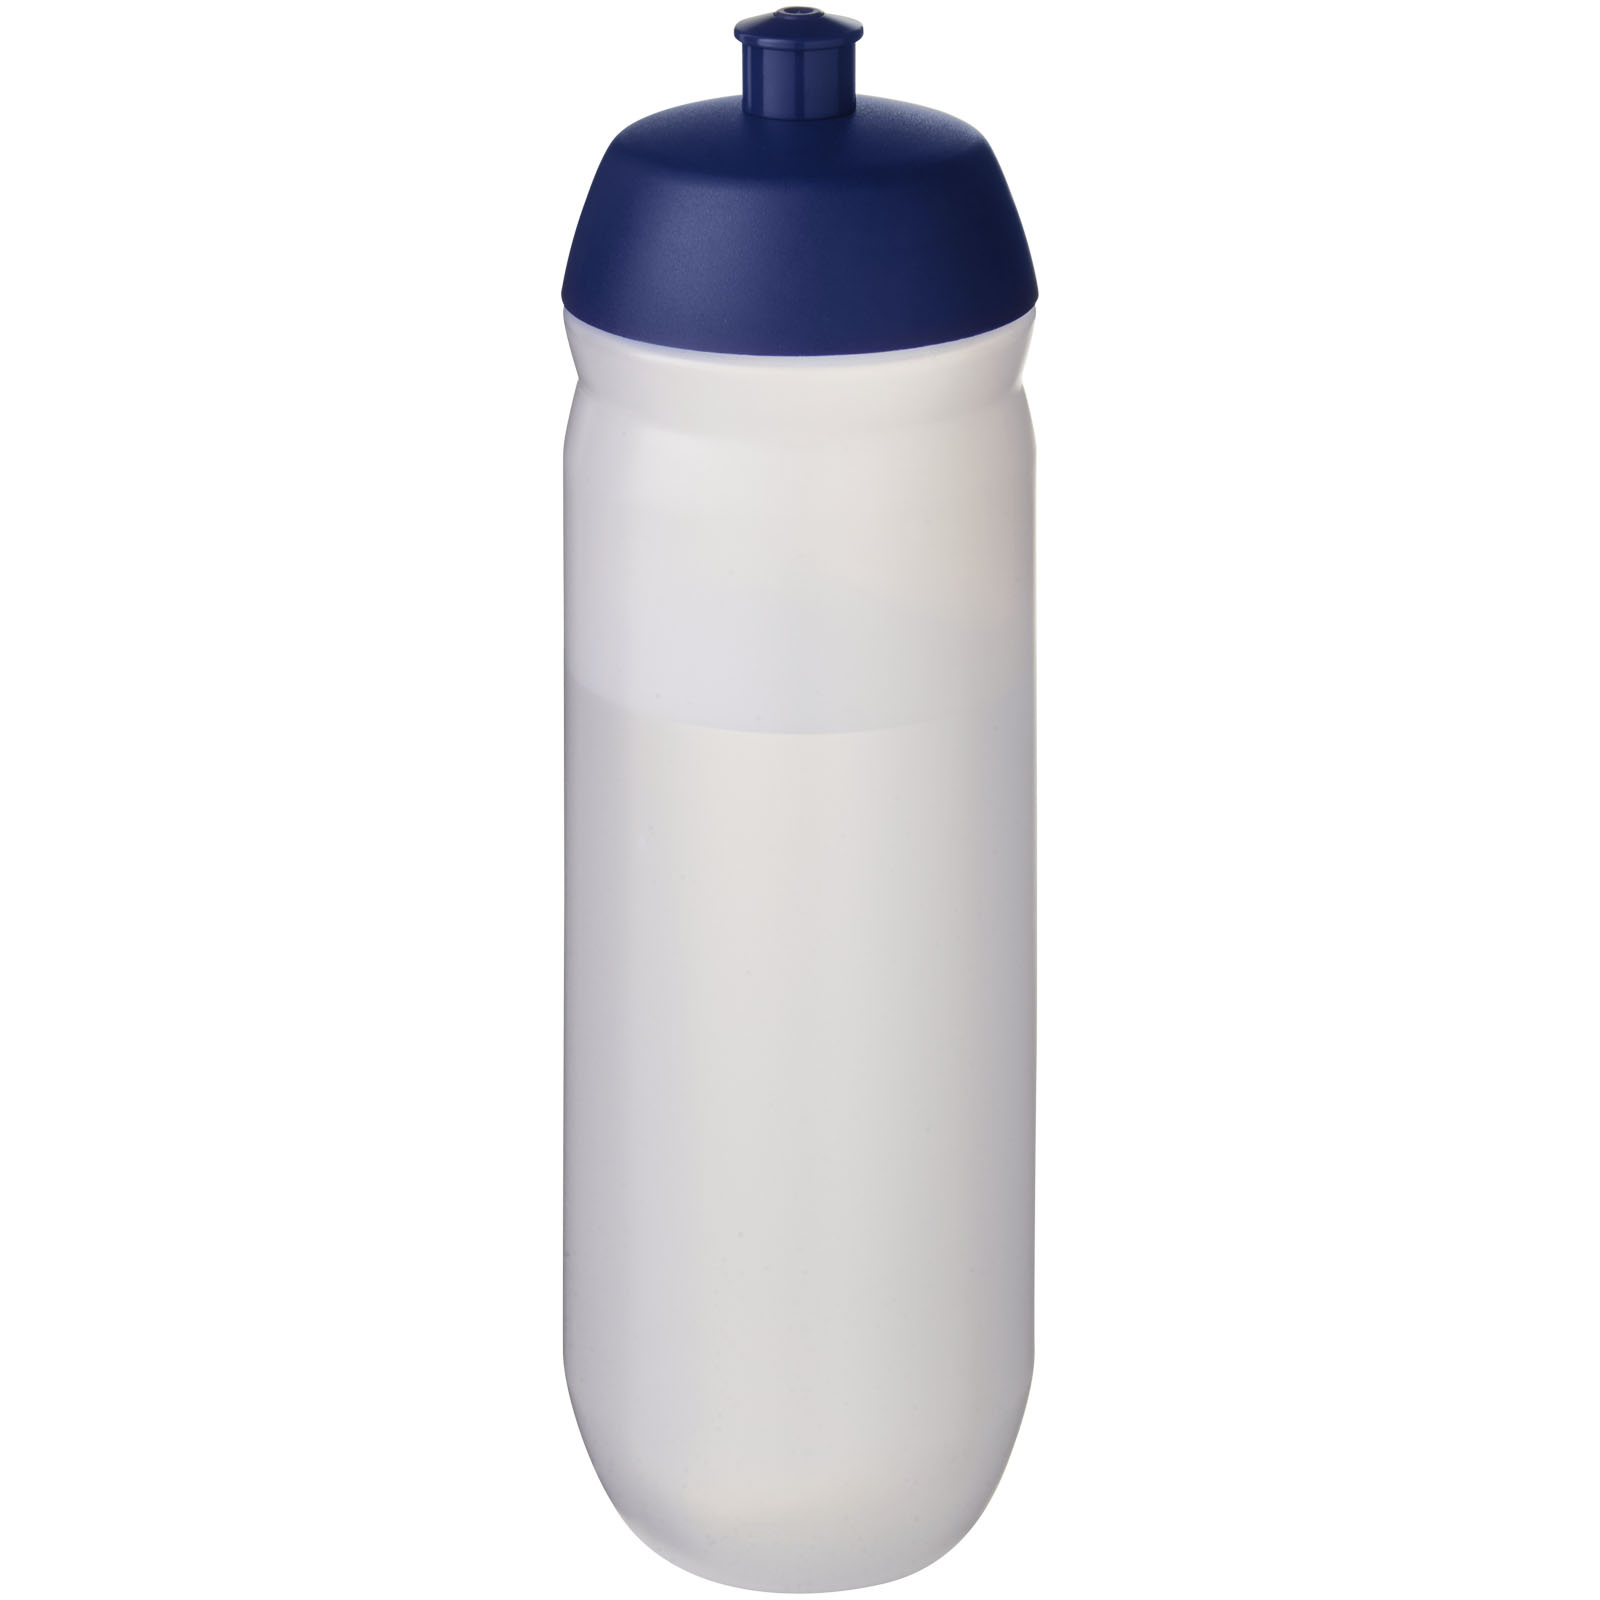 Plastic sports bottle DEFIED, 750 ml